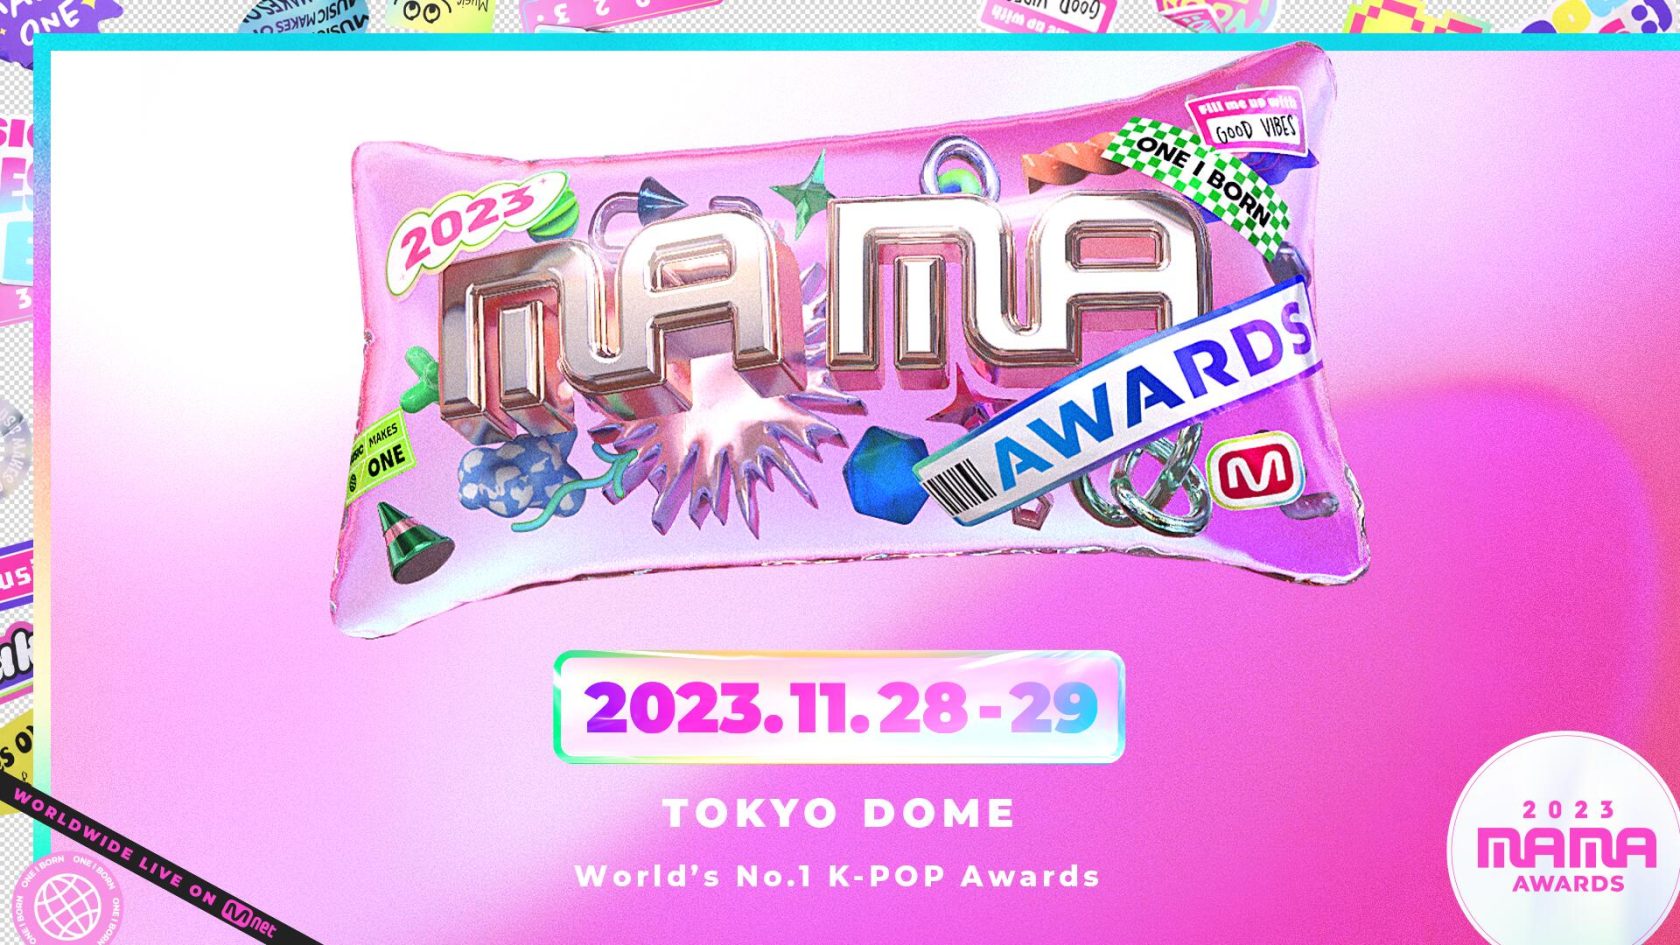 世界最大級のK-POP授賞式「2023 MAMA AWARDS」が東京ドームで開催